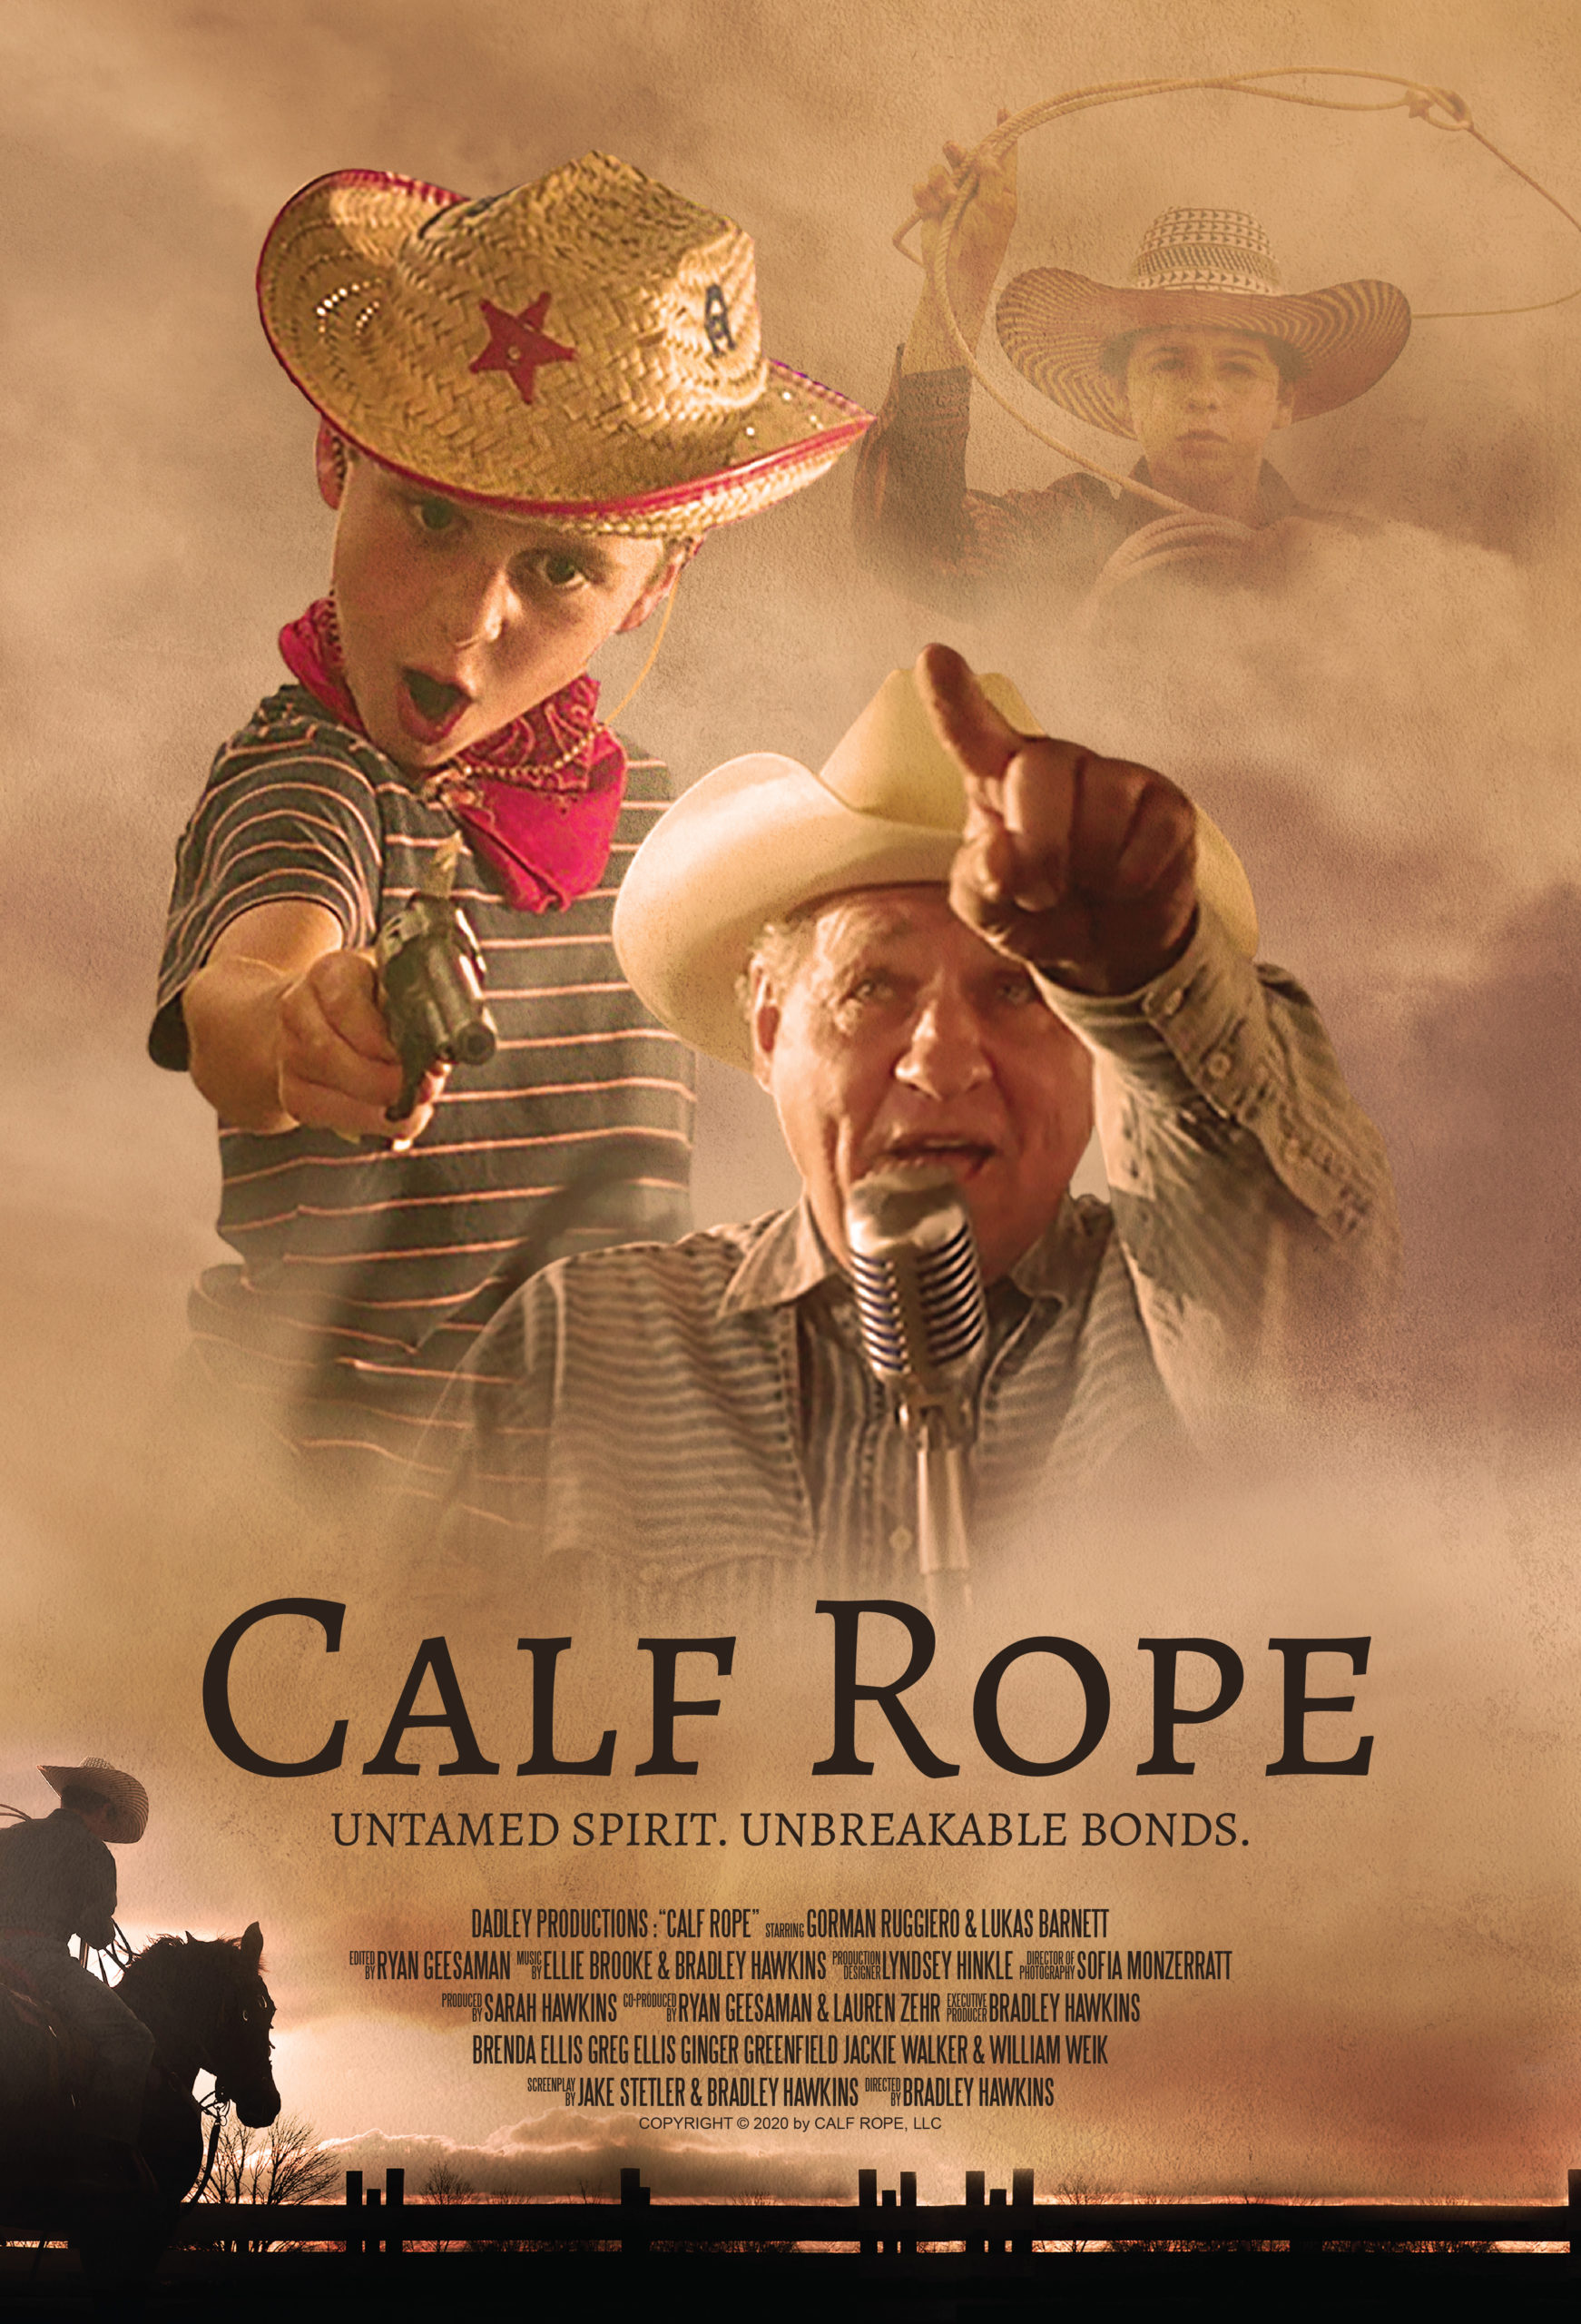 Calf Rope